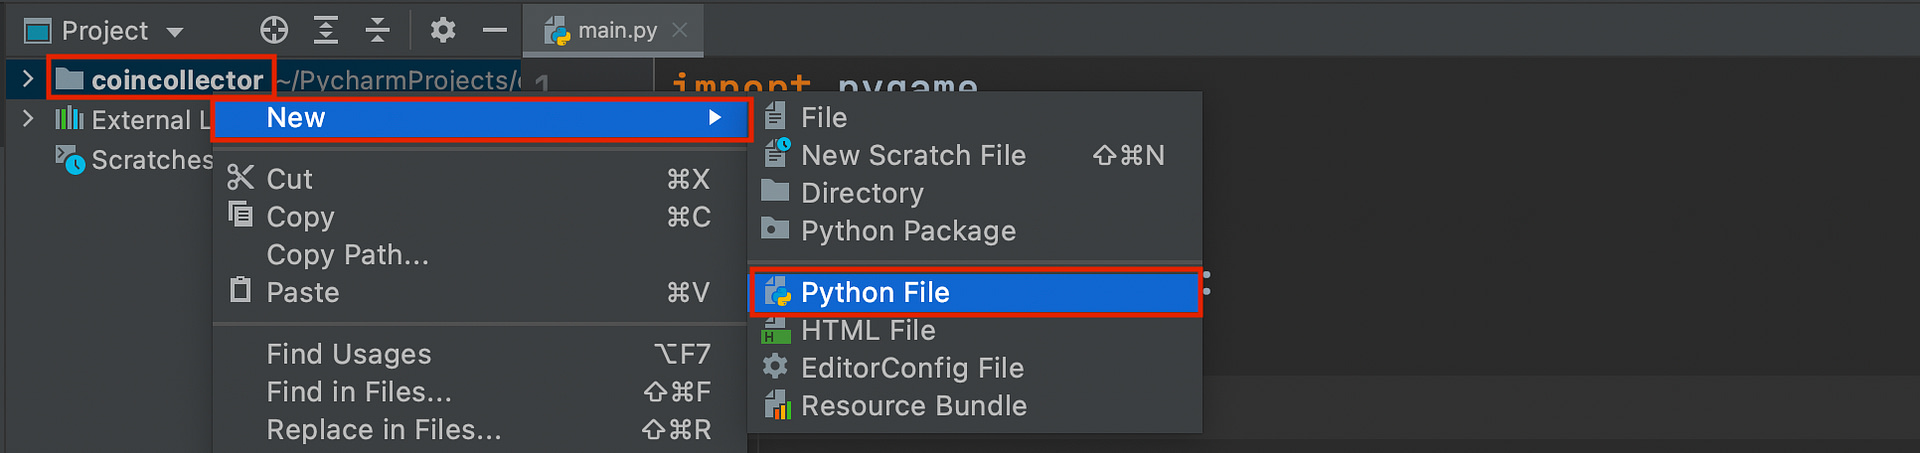 pygame lernen: Wir erstellen eine neue Python File